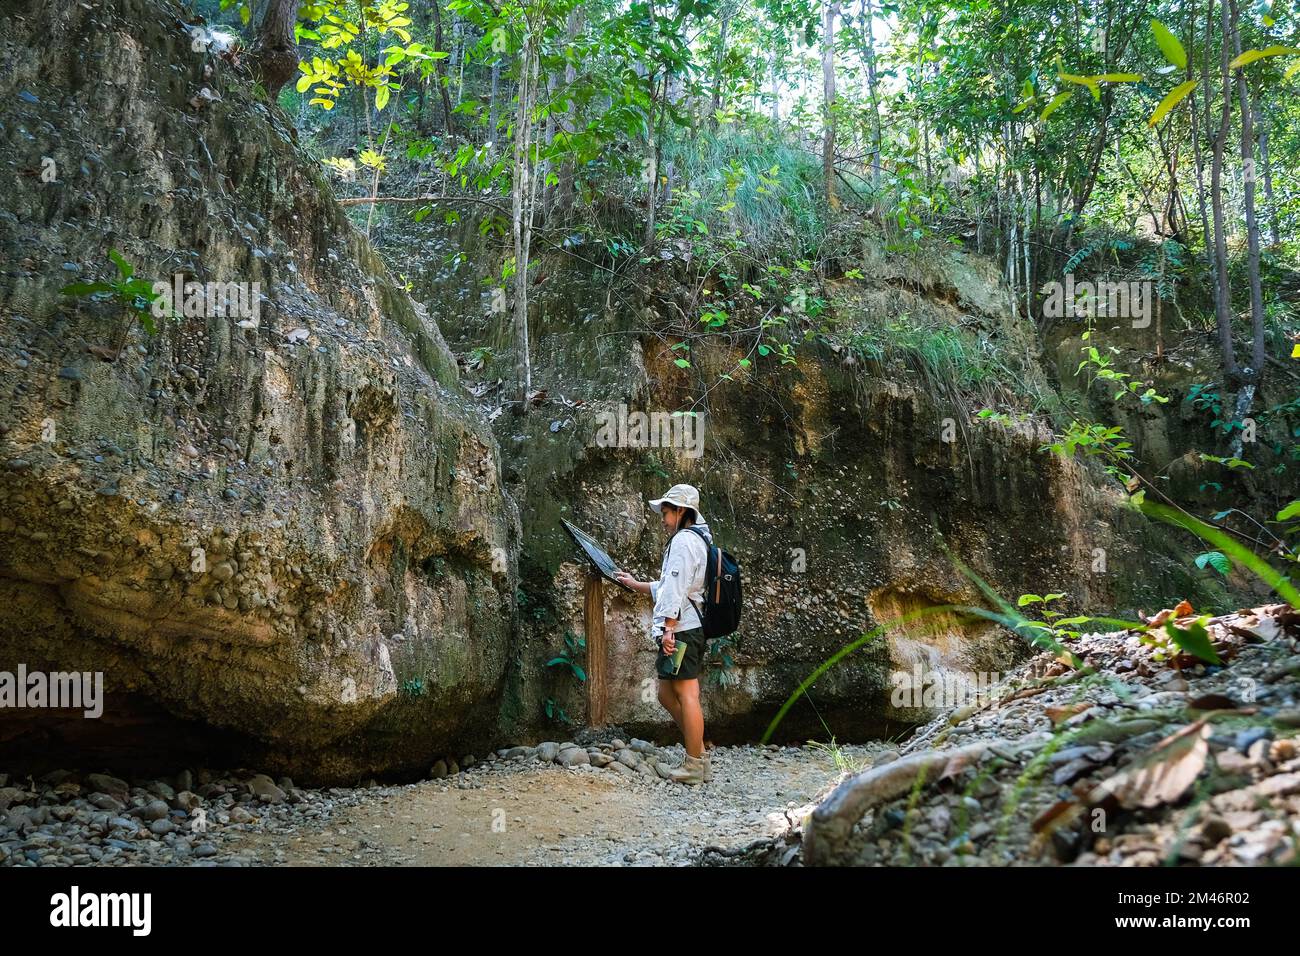 Femme géologue avec sac à dos explorant le sentier de la nature en forêt et analysant le rocher ou le gravier. Les chercheurs recueillent des échantillons de matériel biologique. Env Banque D'Images